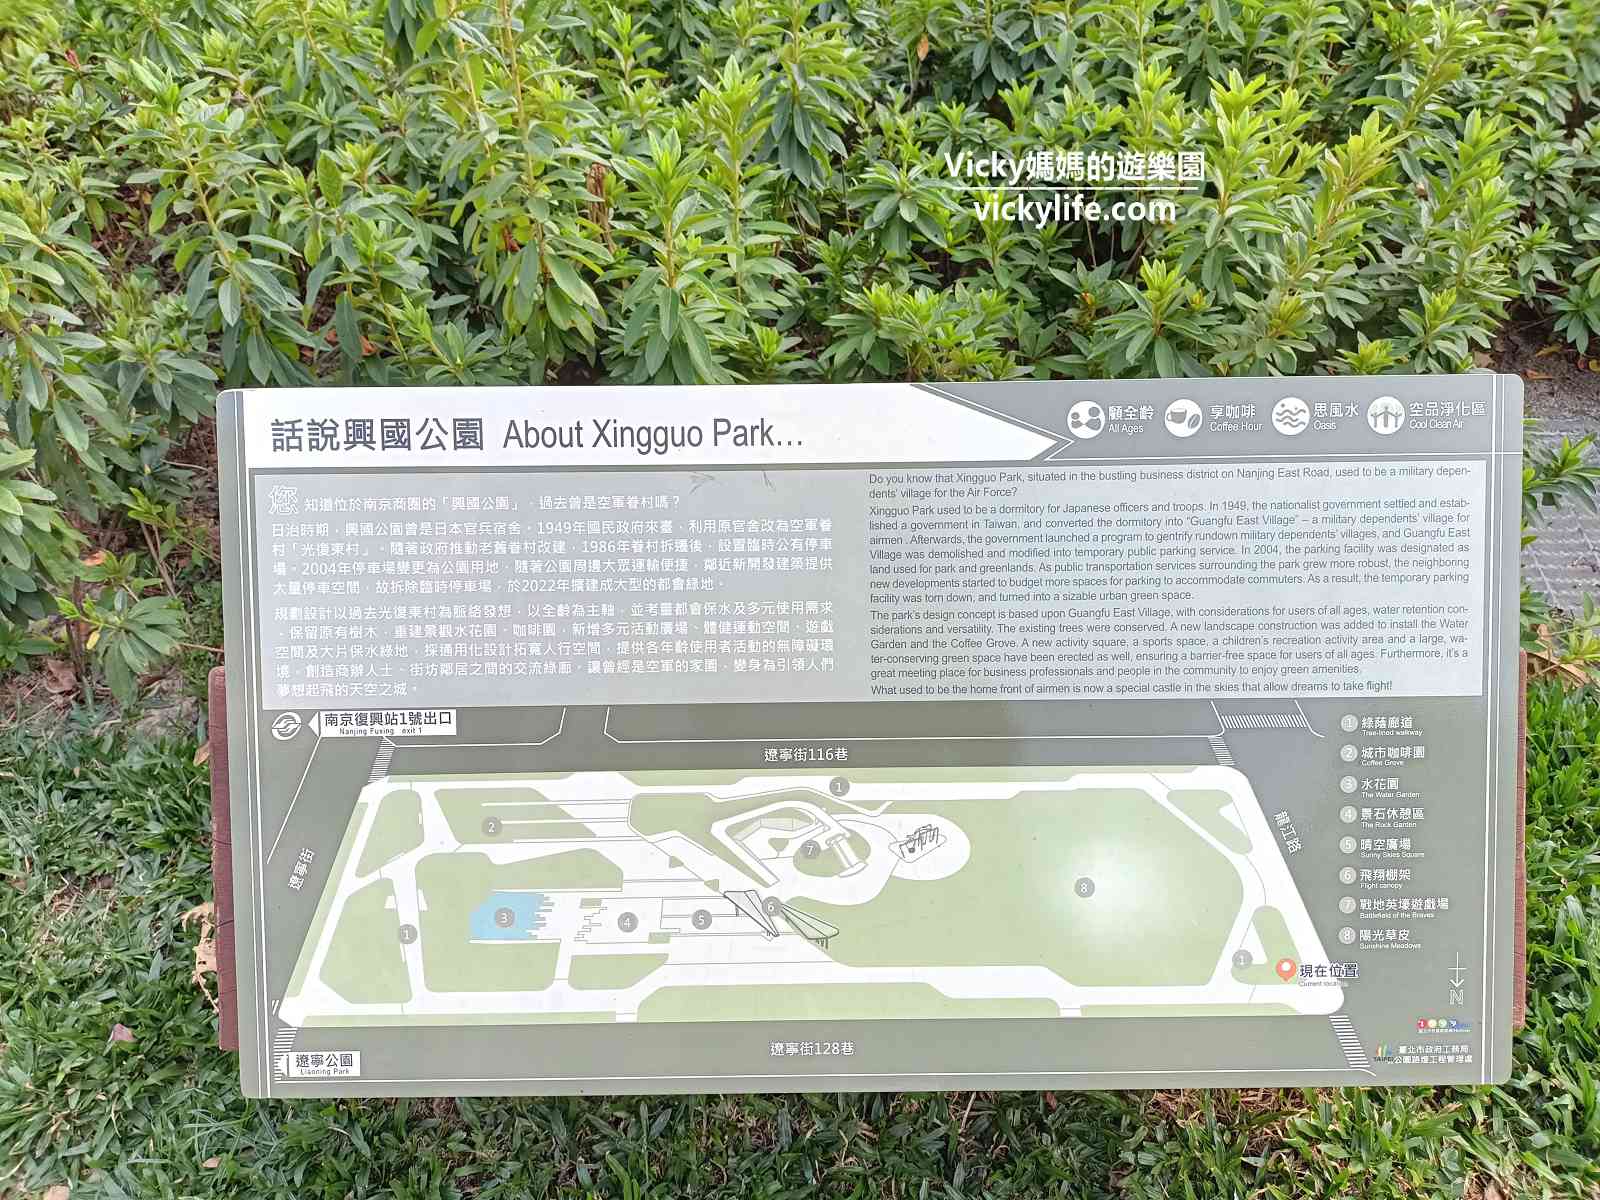 台北特色公園︱中山區 興國公園：眷村元素，以戰地英壕為主題，設有攀爬坡、攀爬架、磨石子滑梯的全齡公園